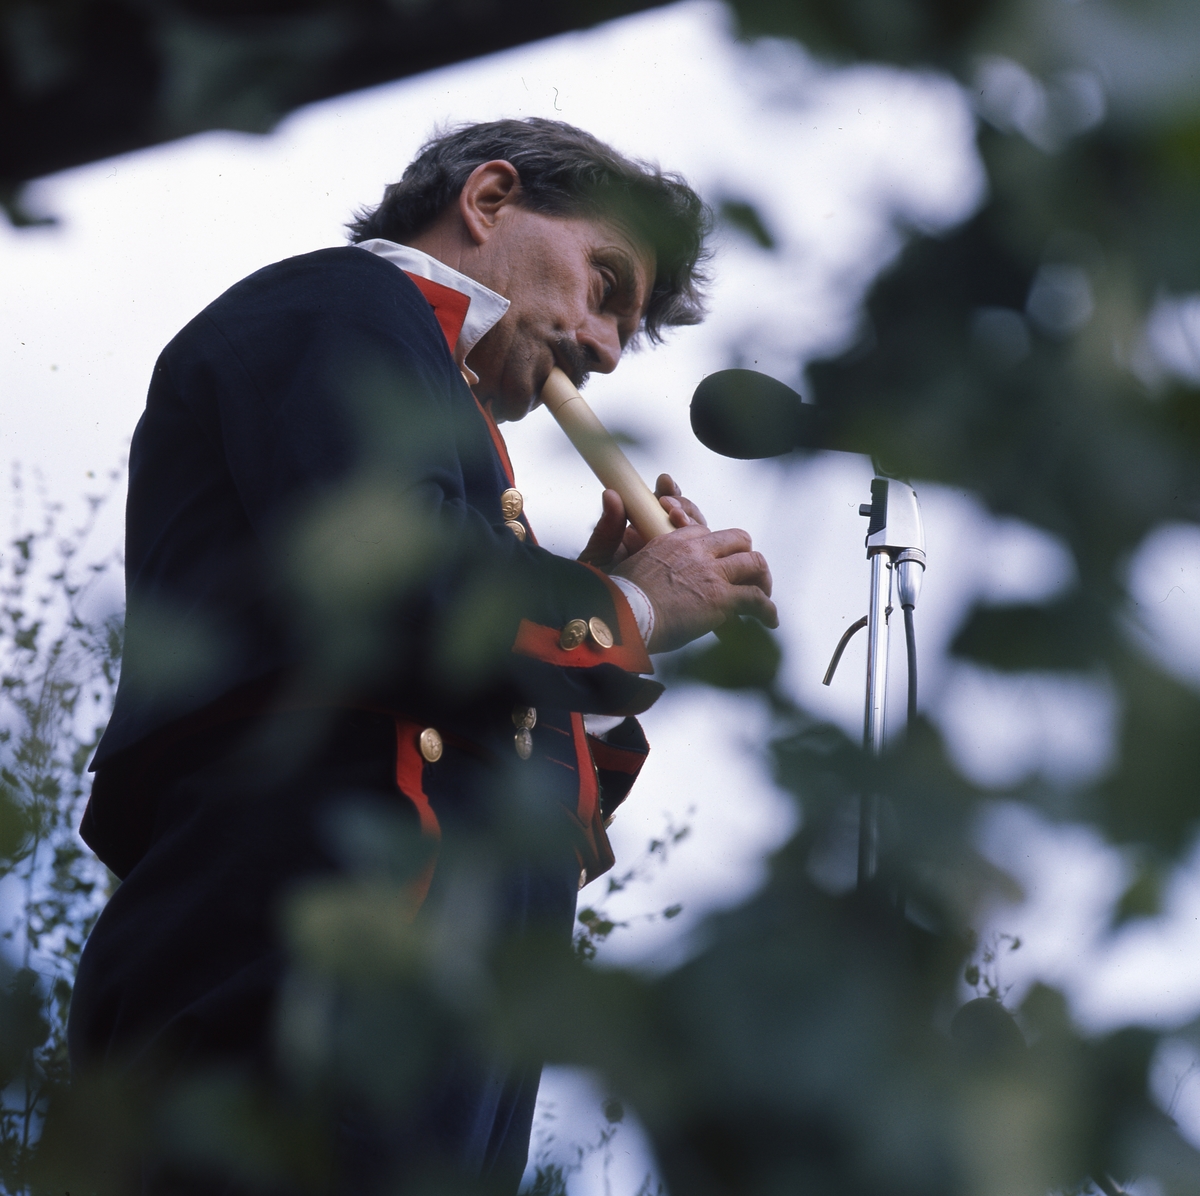 "Afton på Ängratörn". En man iklädd folkdräkt står framför en mikrofon och spelar flöjt.